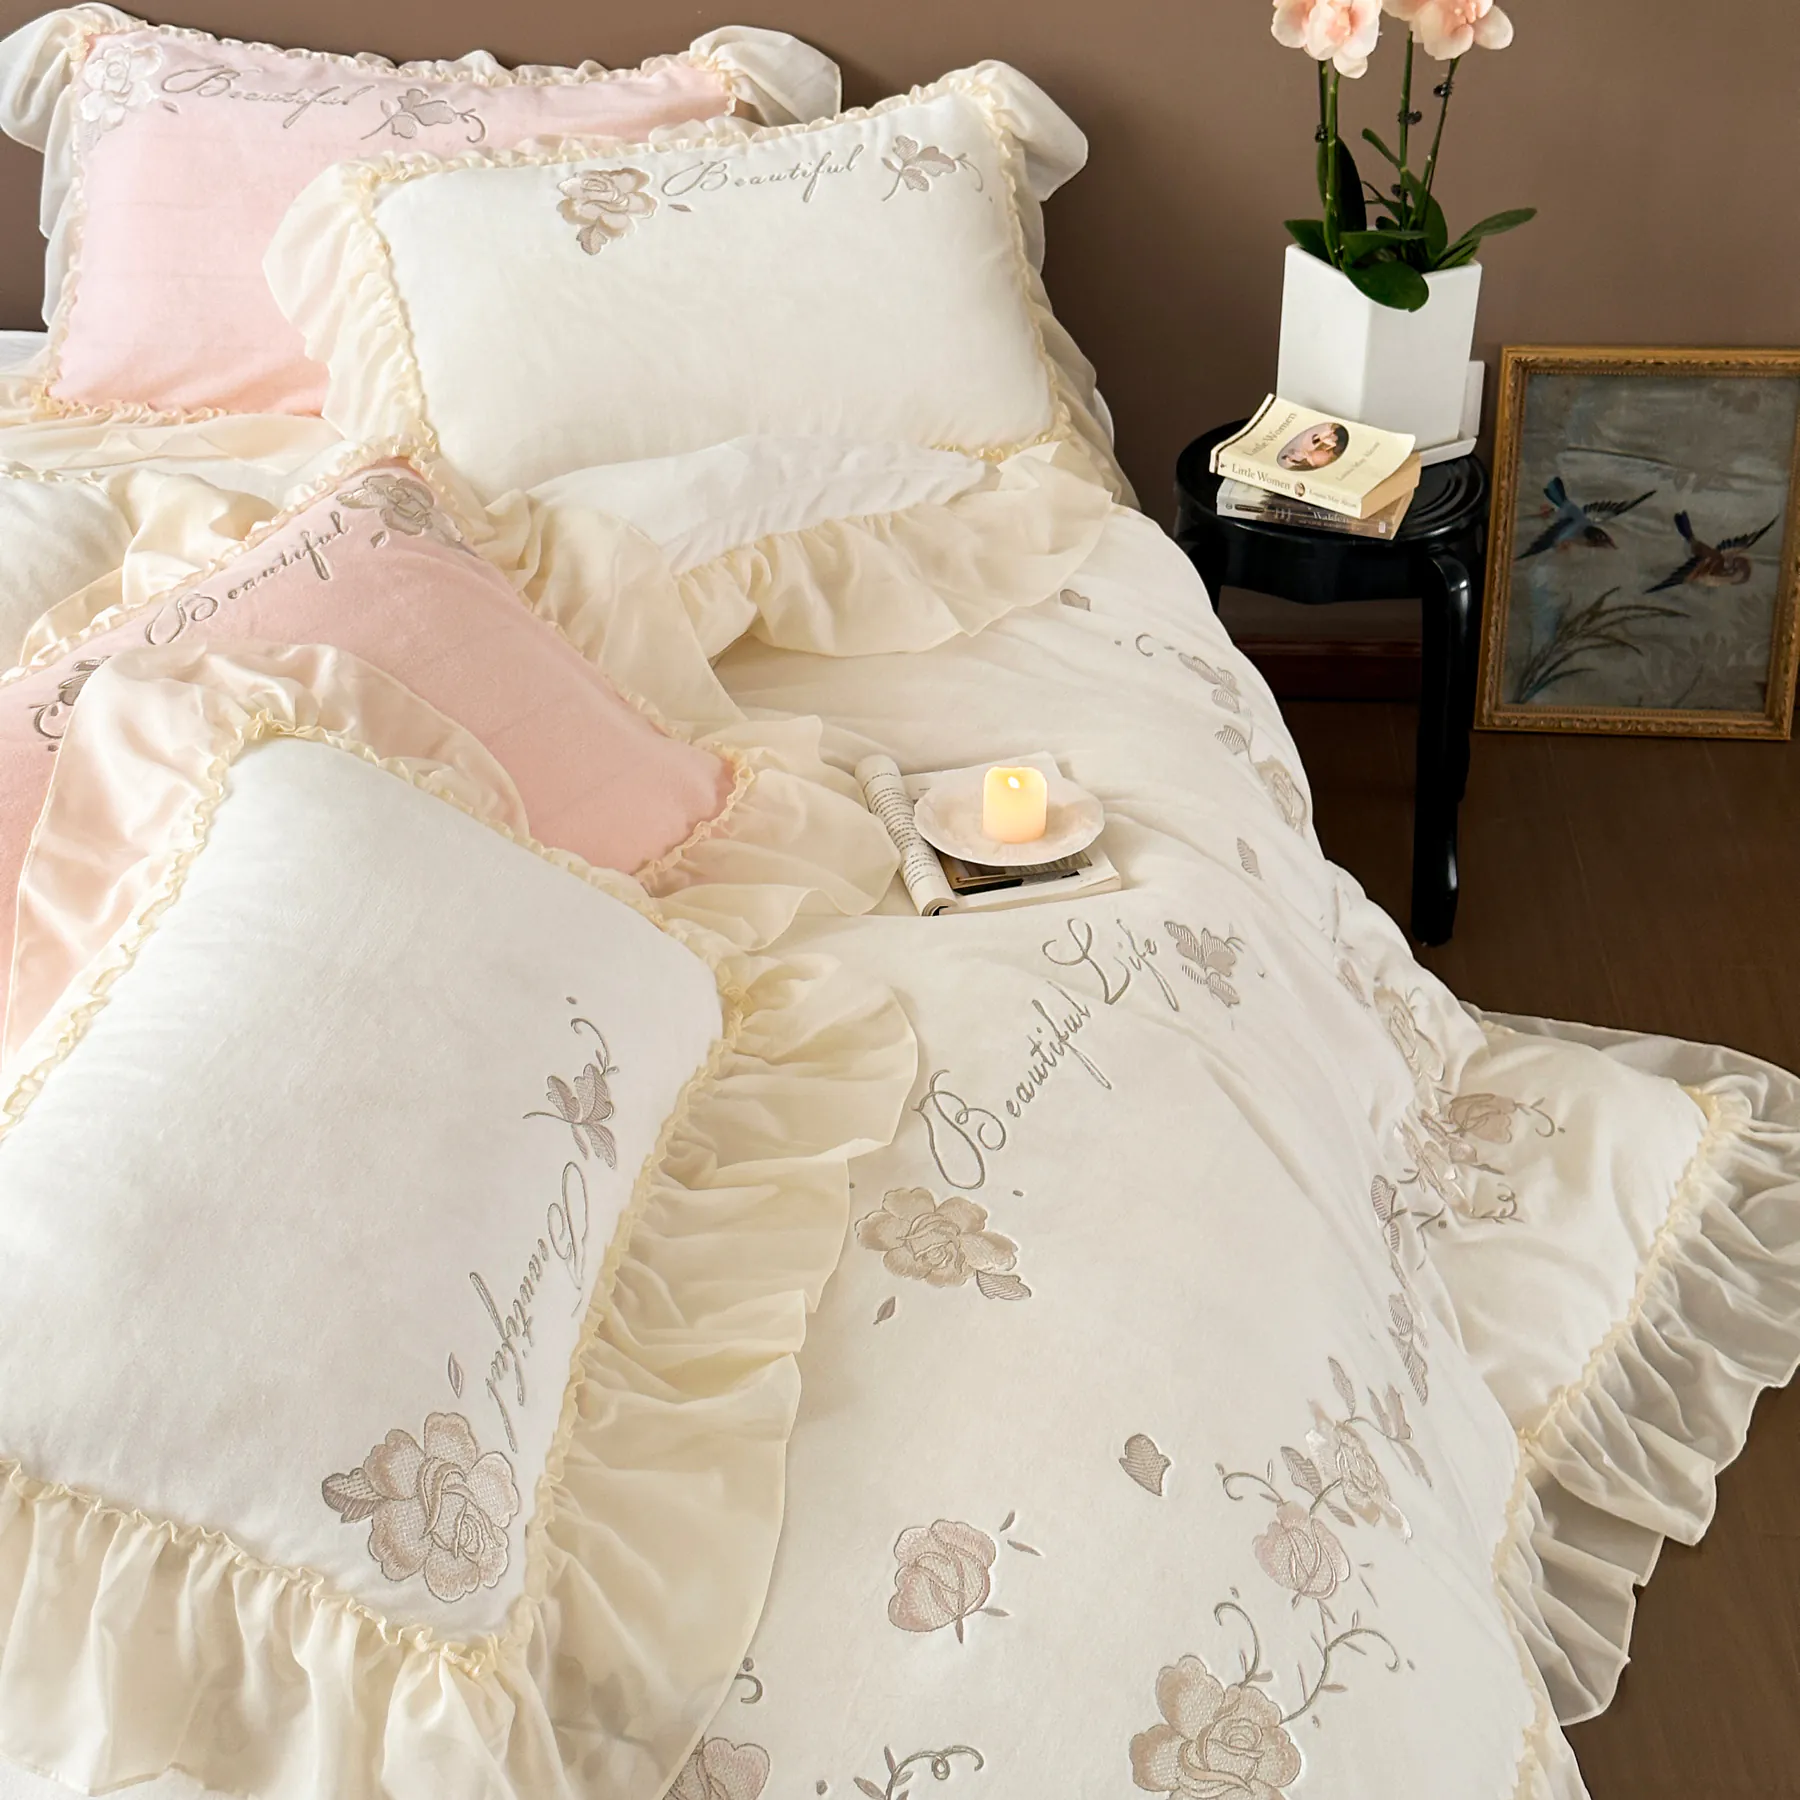 Aesthetic Soft Milk Fiber Duvet Cover Bed Sheet Pillowcases 4 Pcs Set02